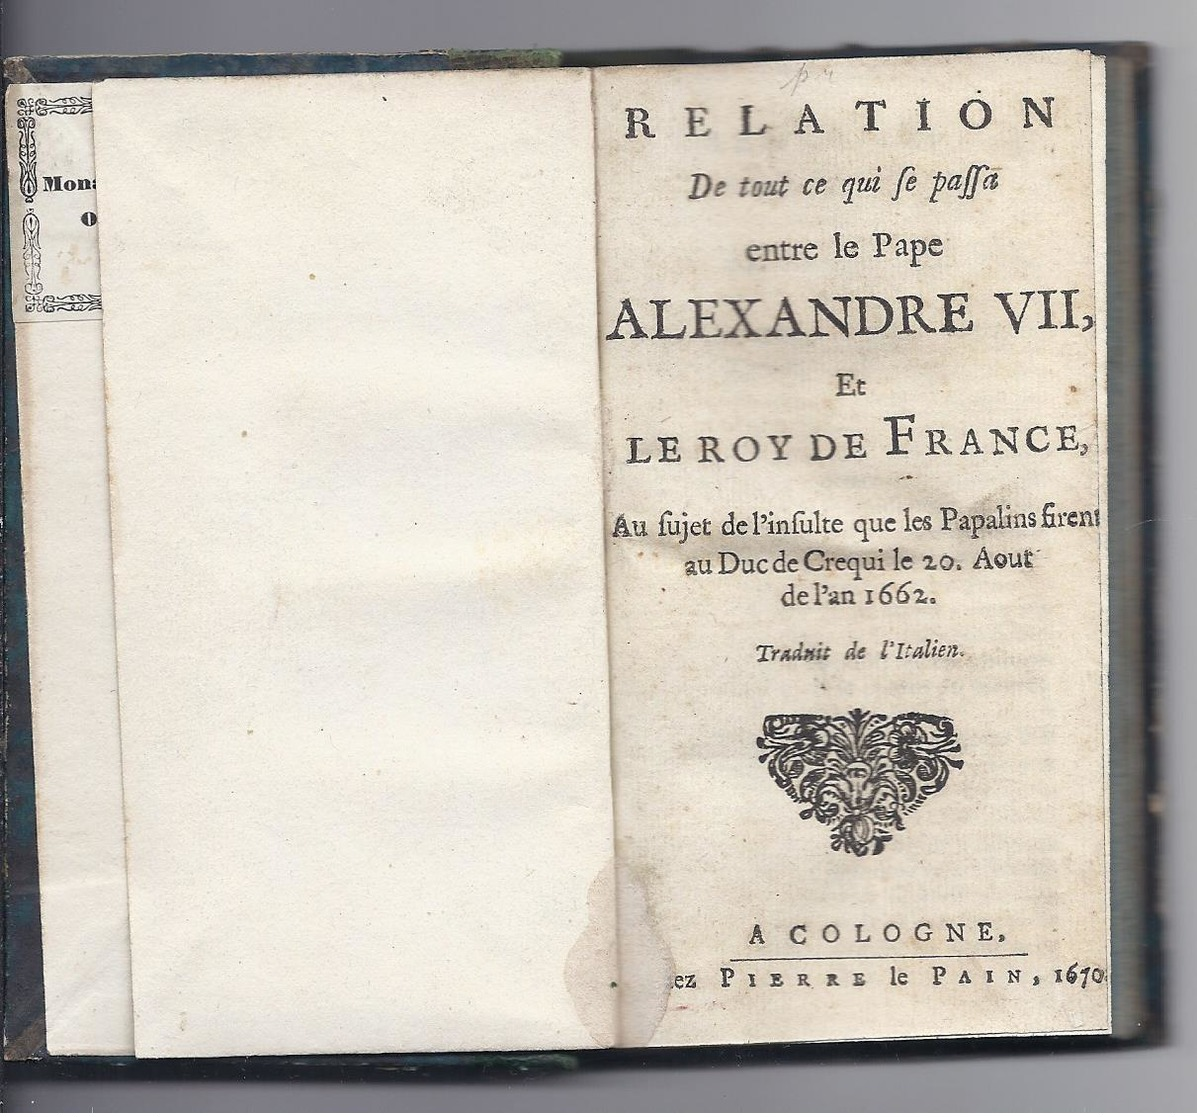 1670 RELATION DE TOUT CE QUI SE PASSA ENTRE LE PAPE ALEXANDRE VII ET LE ROY DE FRANCE DUC DE CREQUI A COLOGNE LE PAIN - Jusque 1700